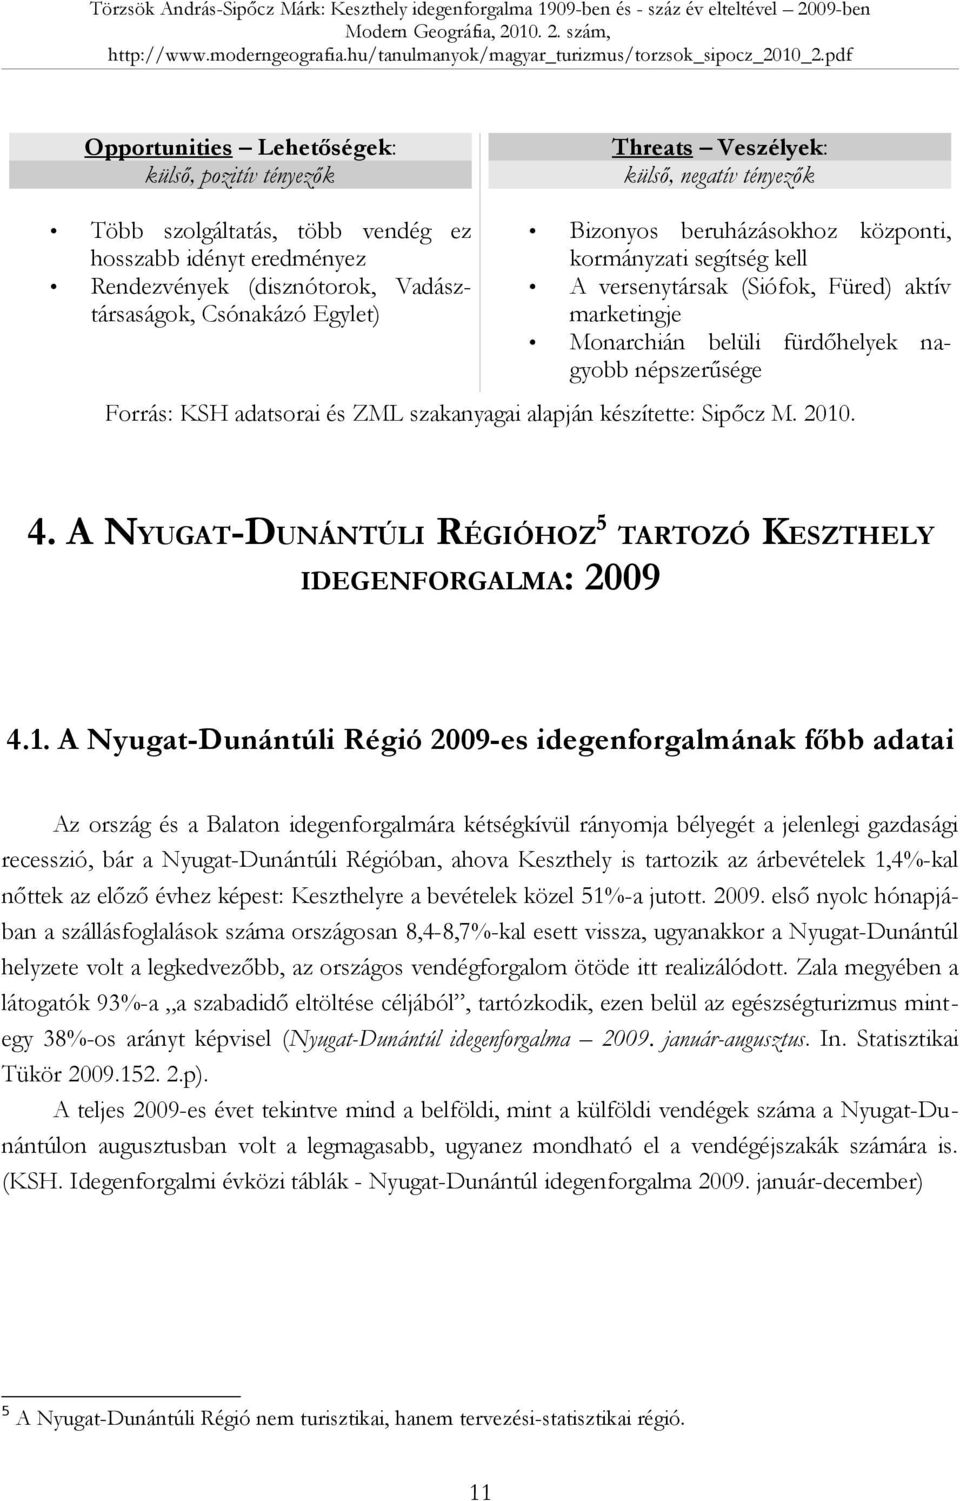 adatsorai és ZML szakanyagai alapján készítette: Sipőcz M. 2010